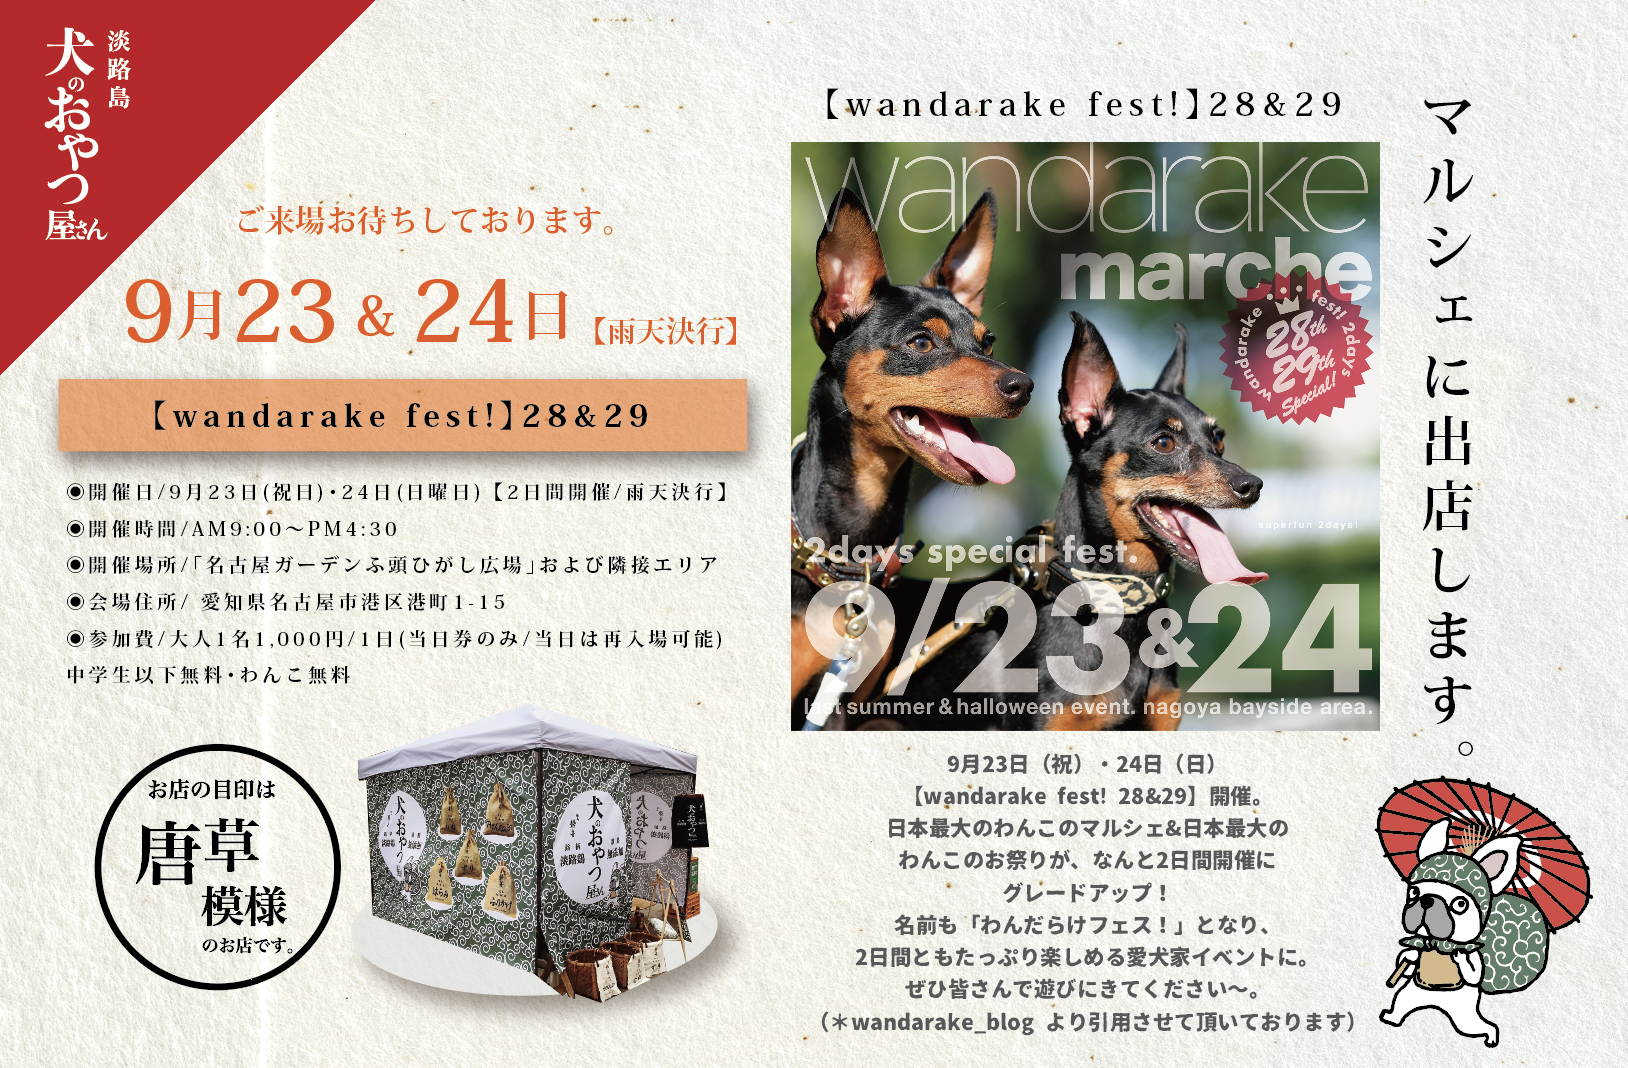 9月23日&24日  @名古屋「 wandarake fest! 28&29」に出店します。